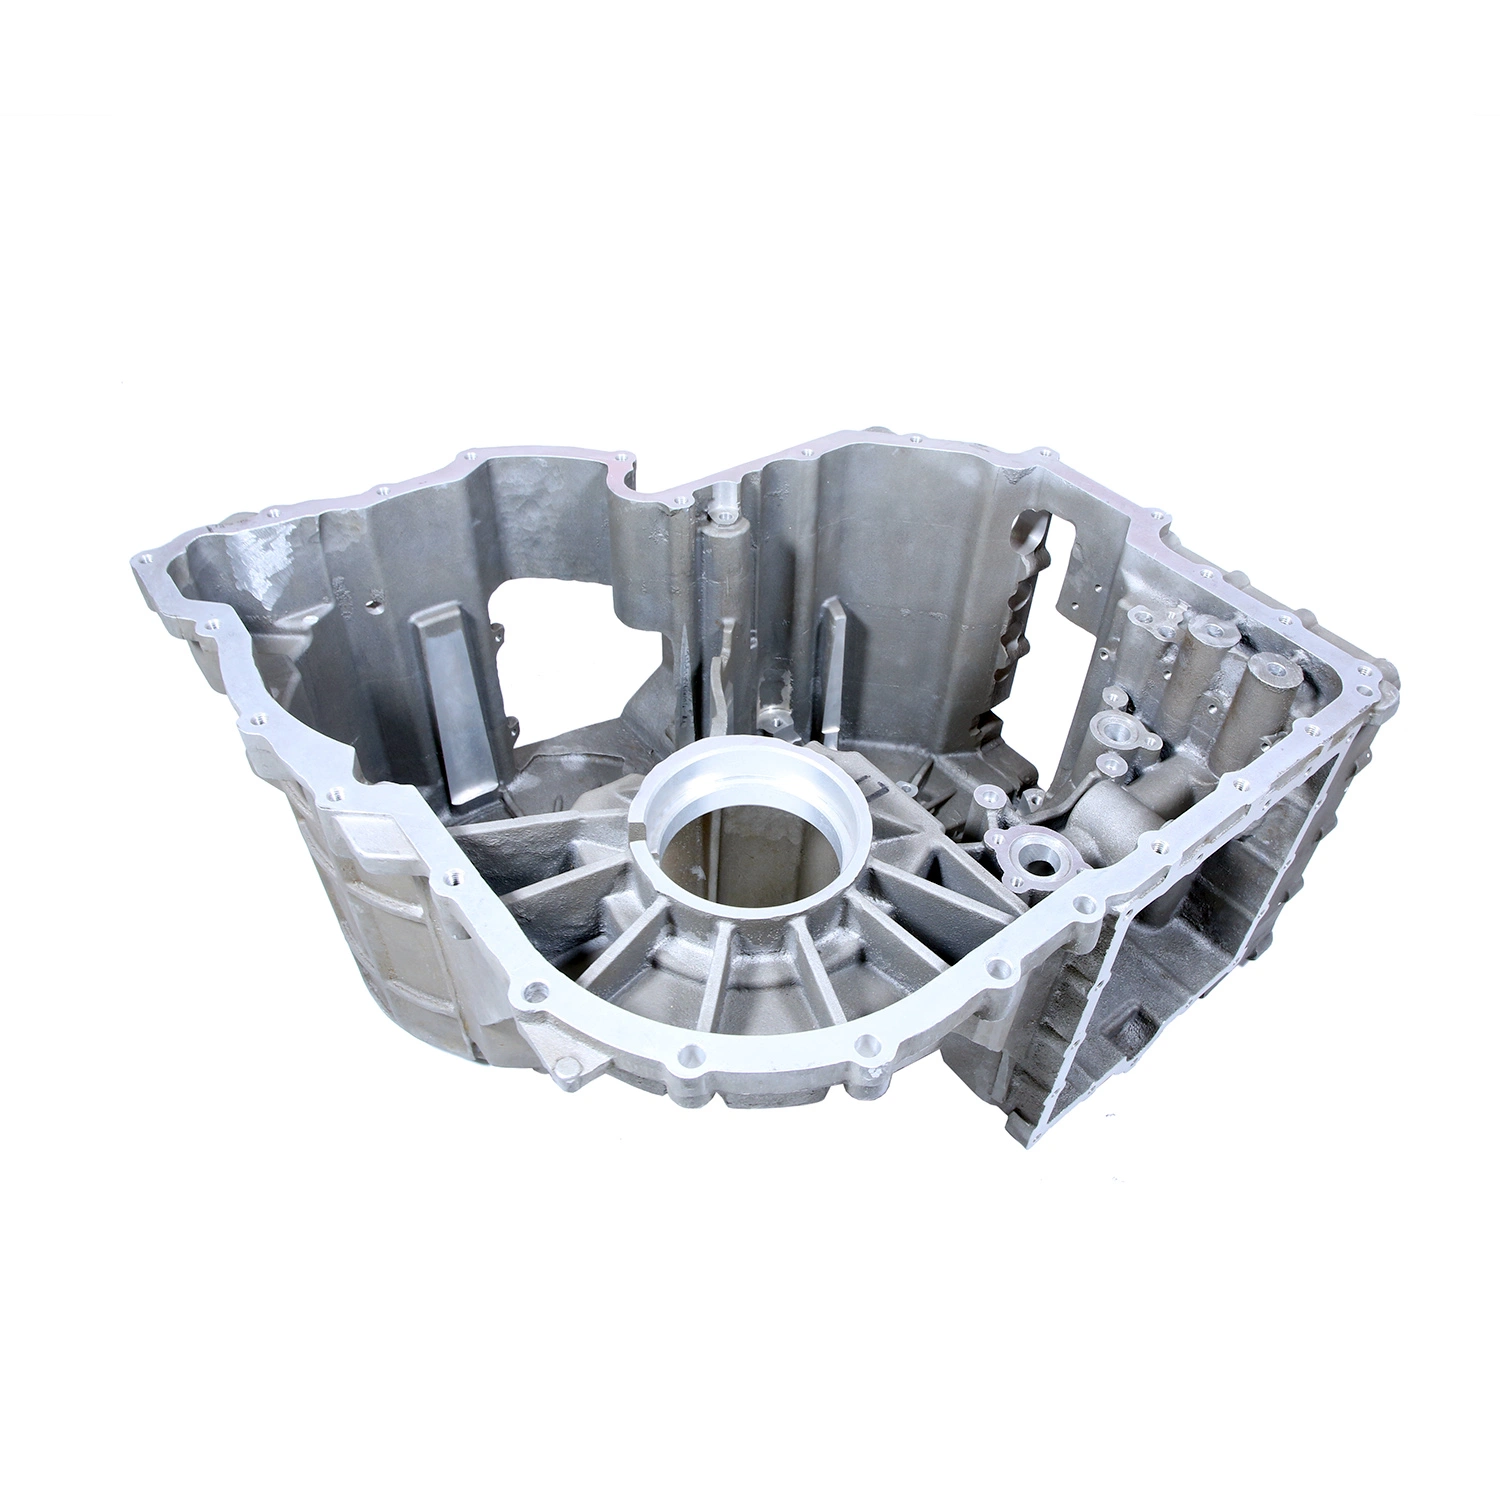 Impressora Sand 3D OEM Custom Metal para peças sobressalentes de maquinaria Fundição por prototipagem rápida de CNC de fundição de areia para impressão 3D Serviço de maquinagem